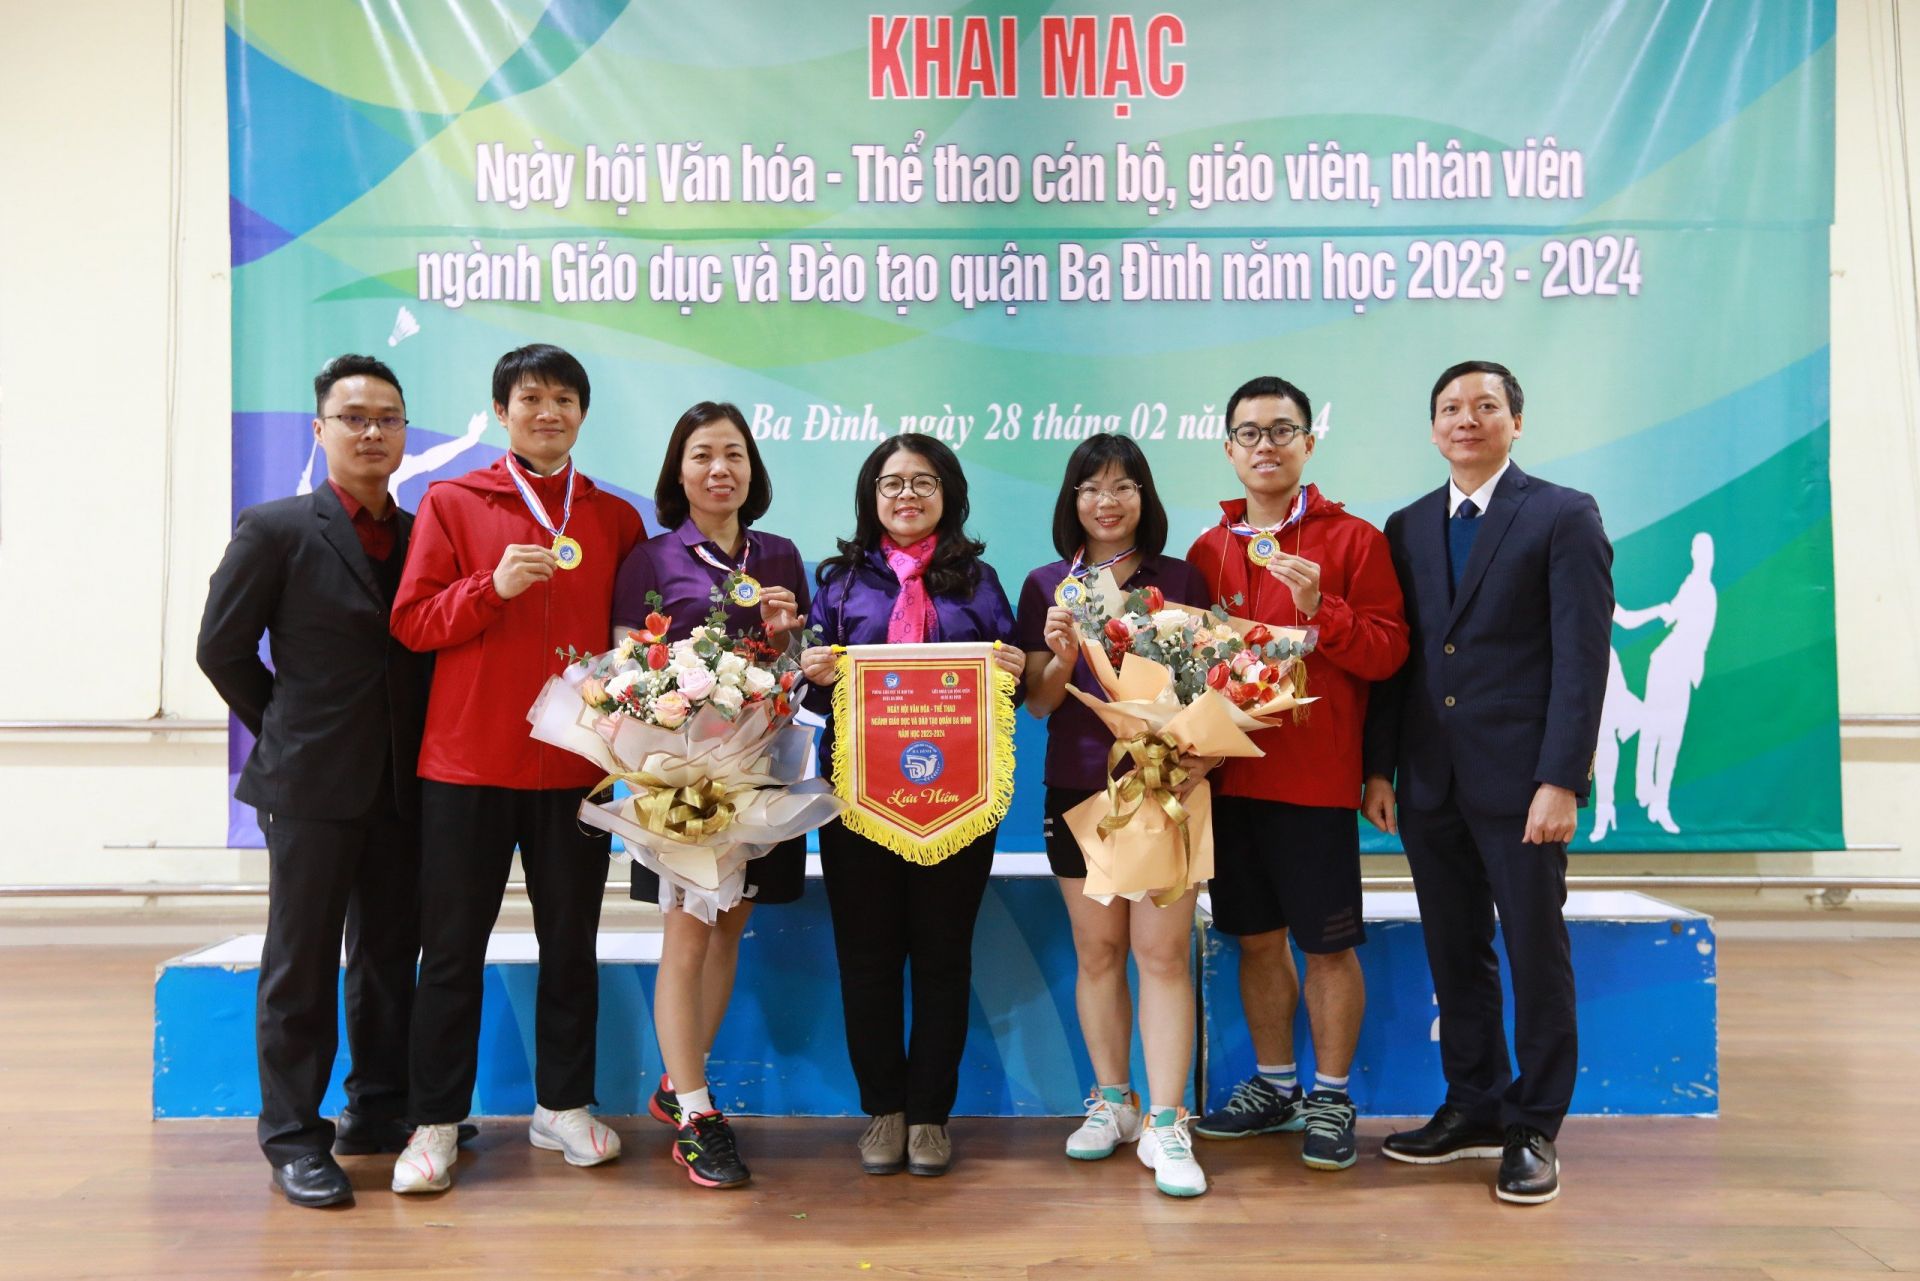 Trường THCS Nguyễn Trãi 2 Huy chương Vàng đôi nam môn cầu lông và 2 Huy chương Vàng đôi nữ môn cầu lông